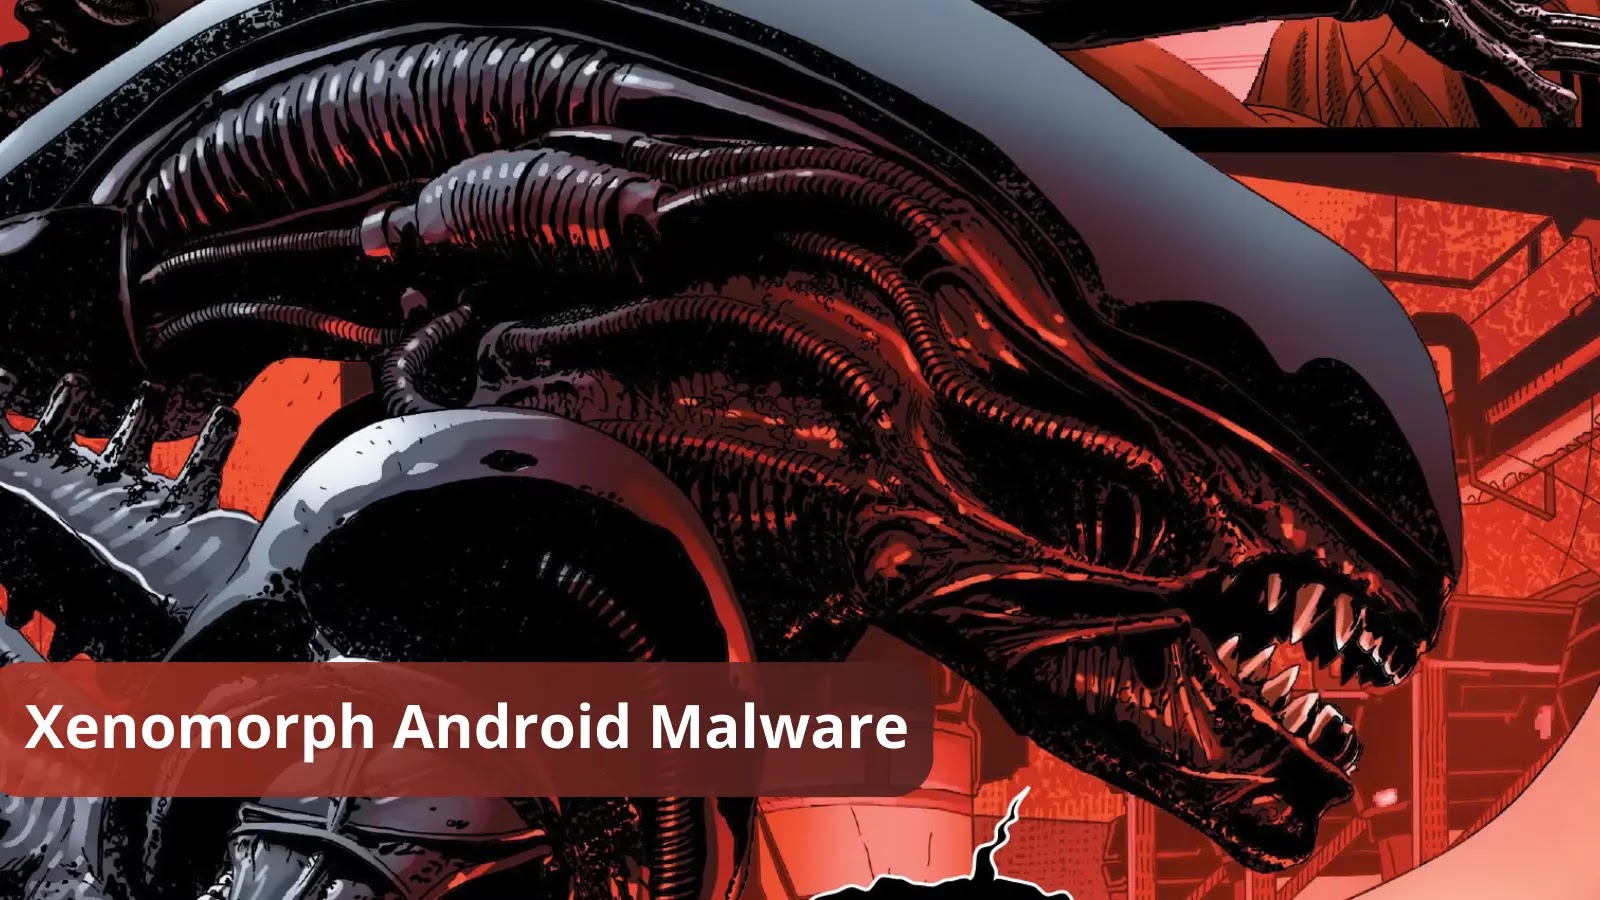 Xenomorph Android Banking Malware